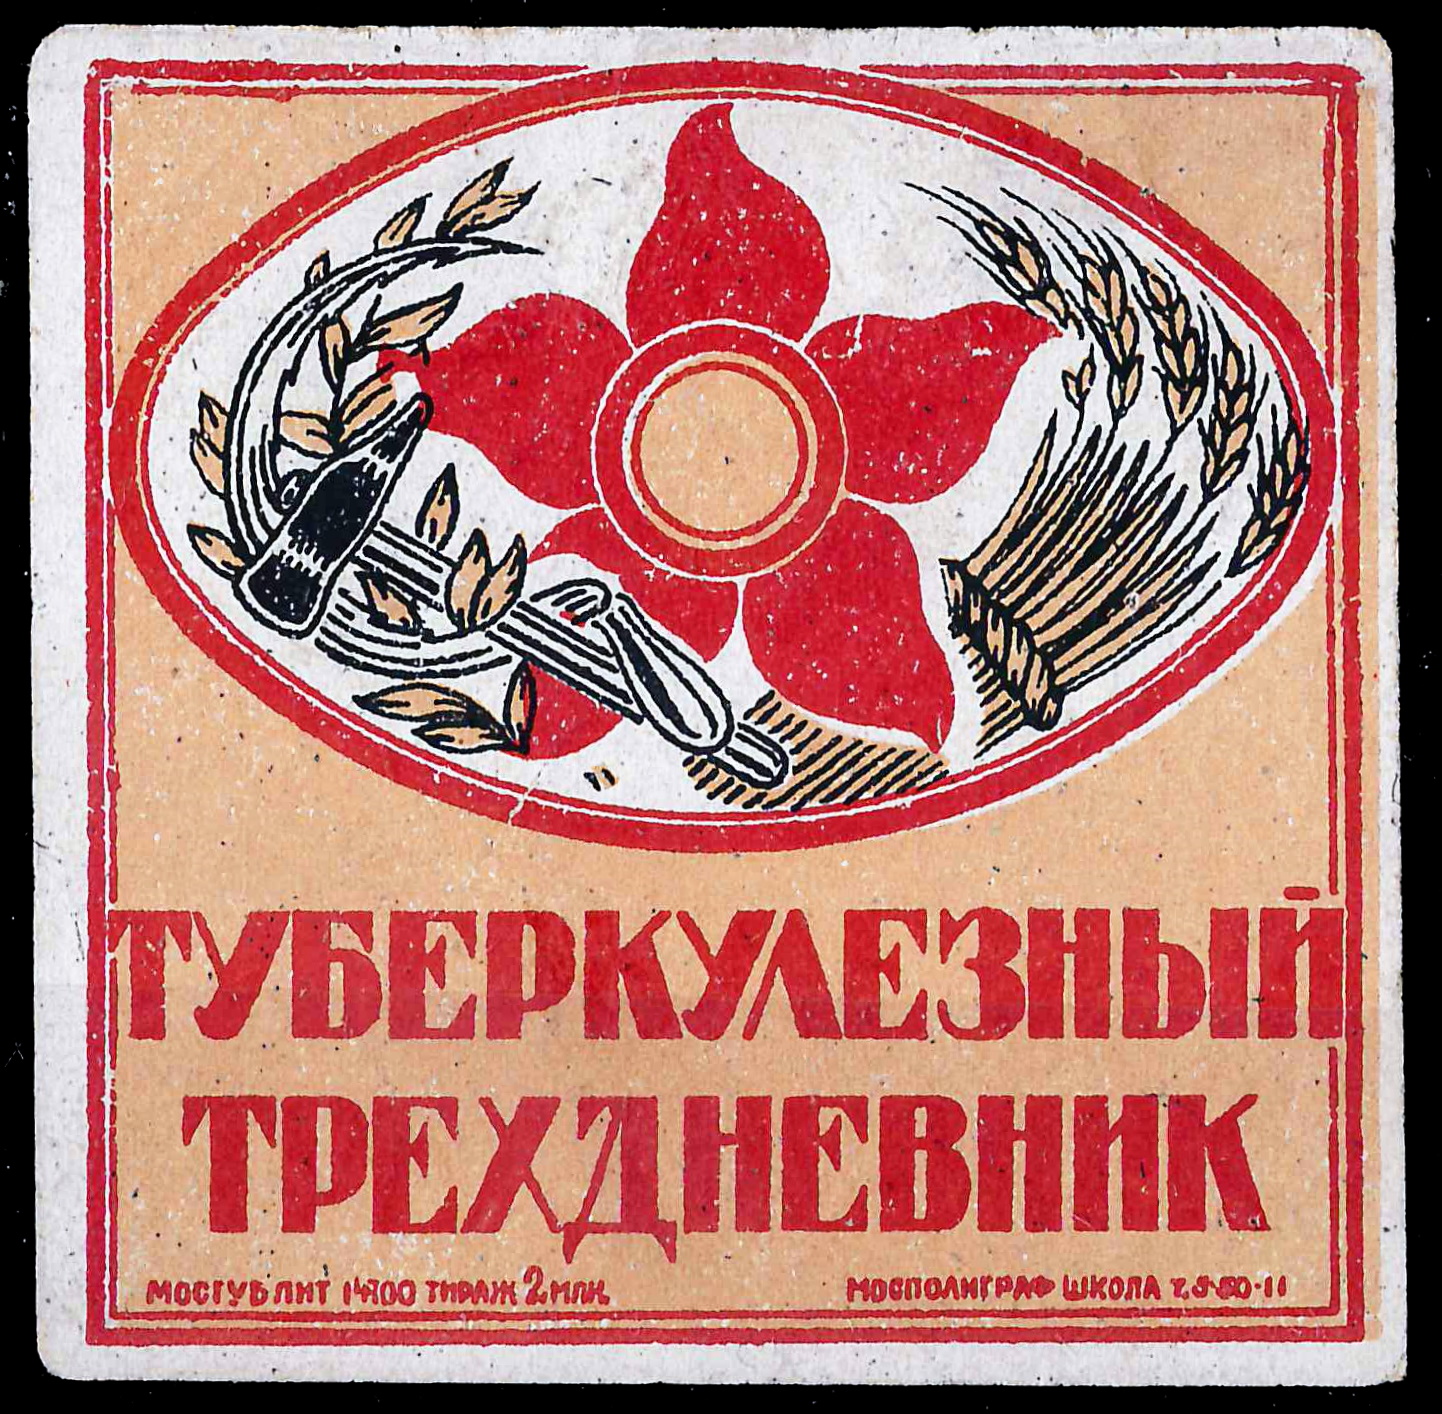 Москва. Непочтовая виньетка «Туберкулёзный трёхдневник». 1920-е годы.